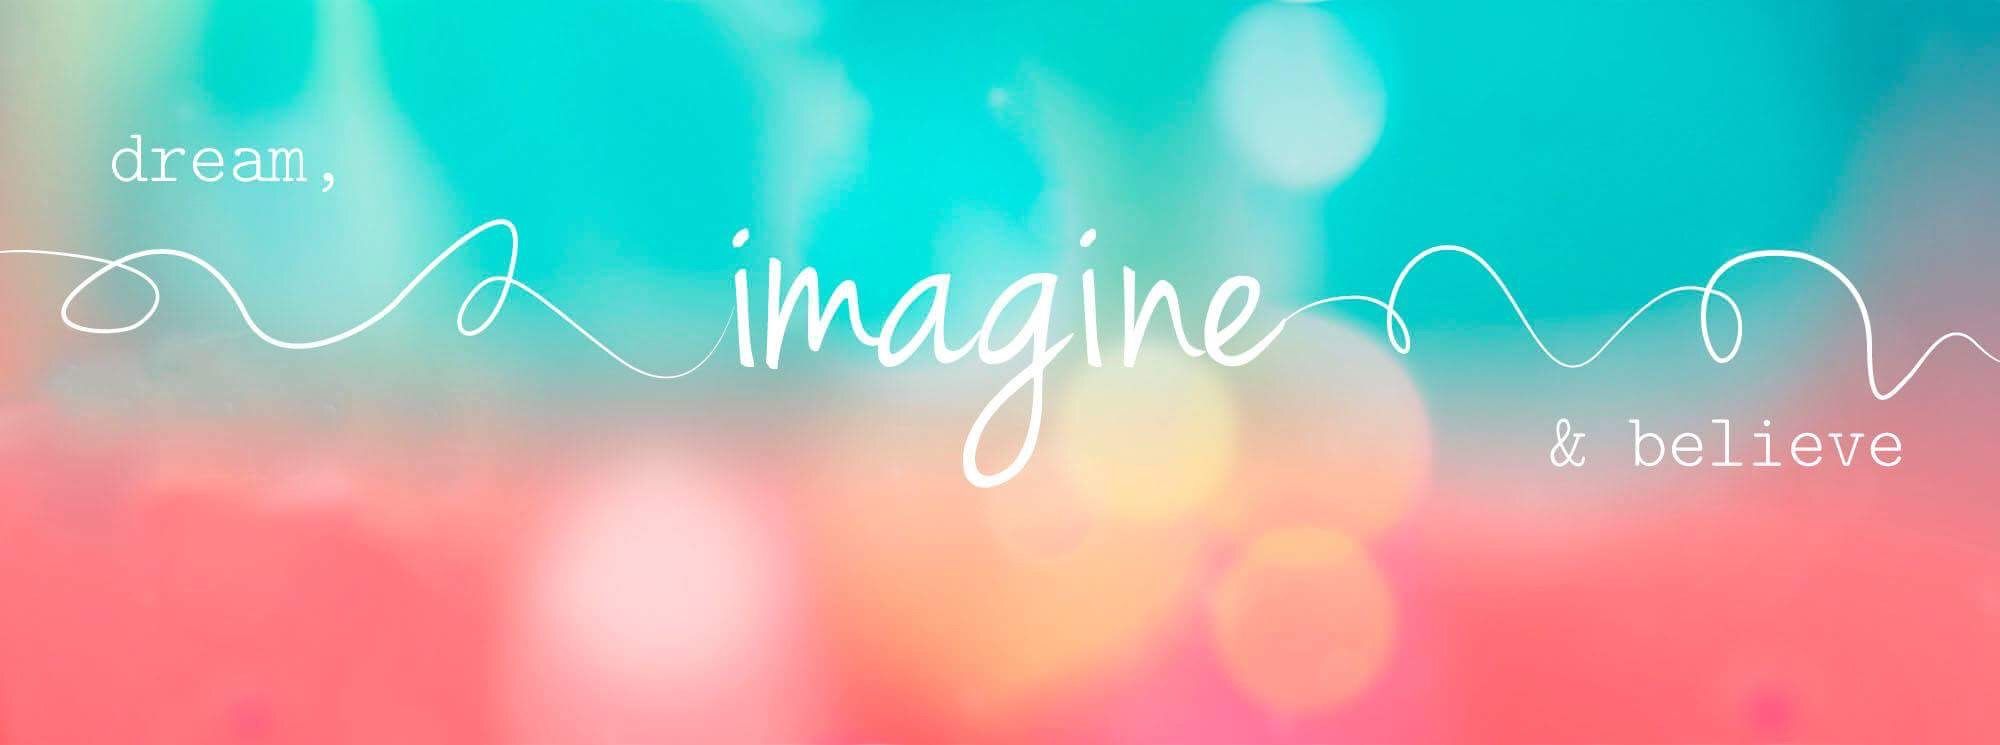 Dream Imagine Believe Facebook Cover - HD Wallpaper 